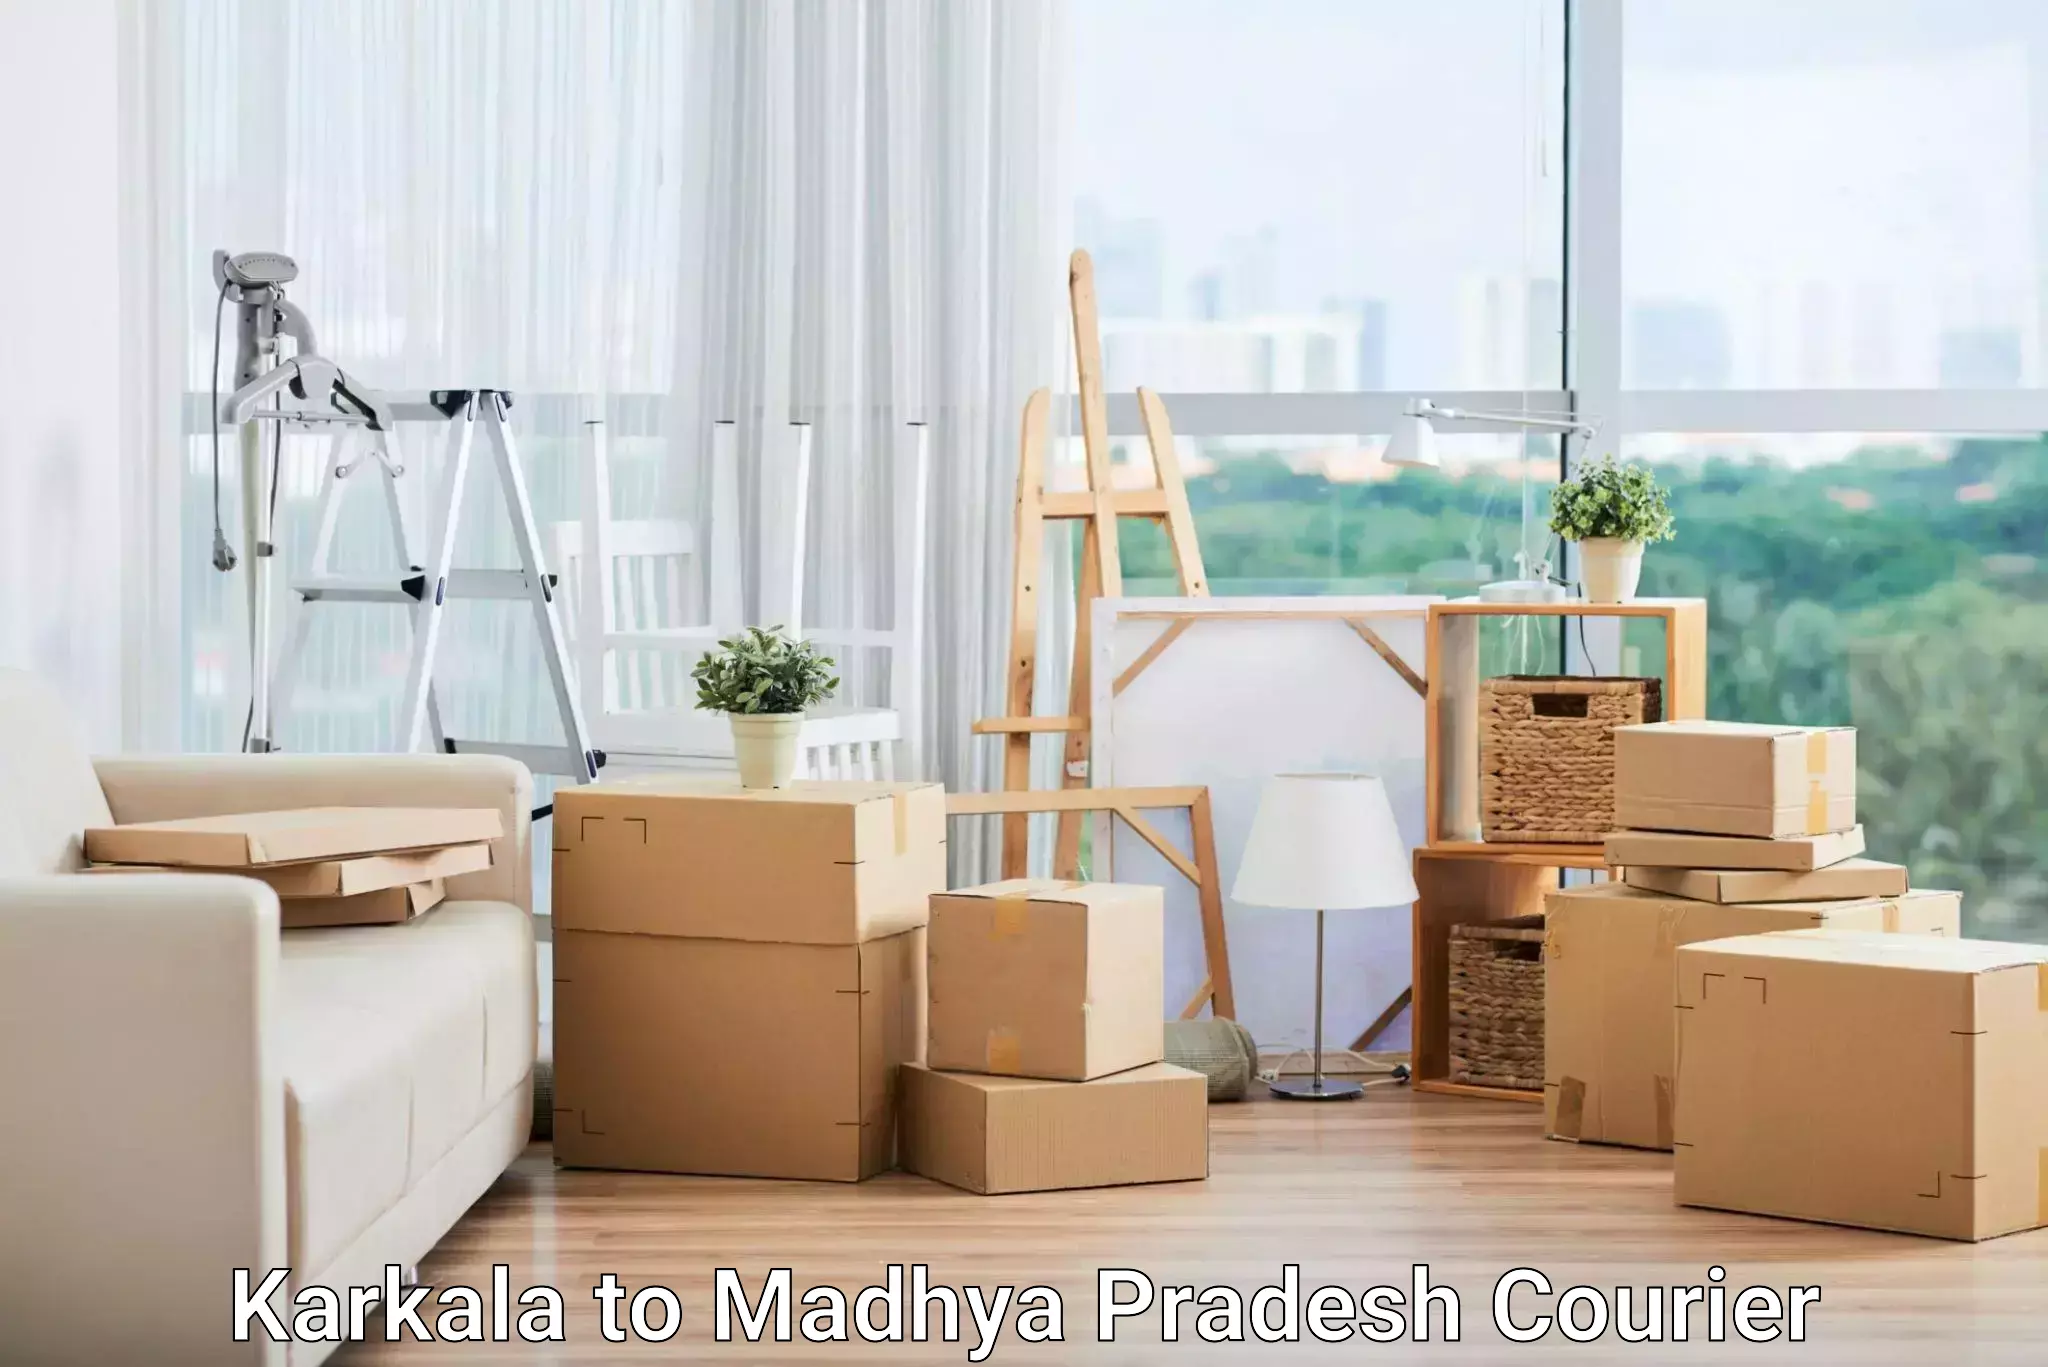 Quality courier partnerships Karkala to Sausar